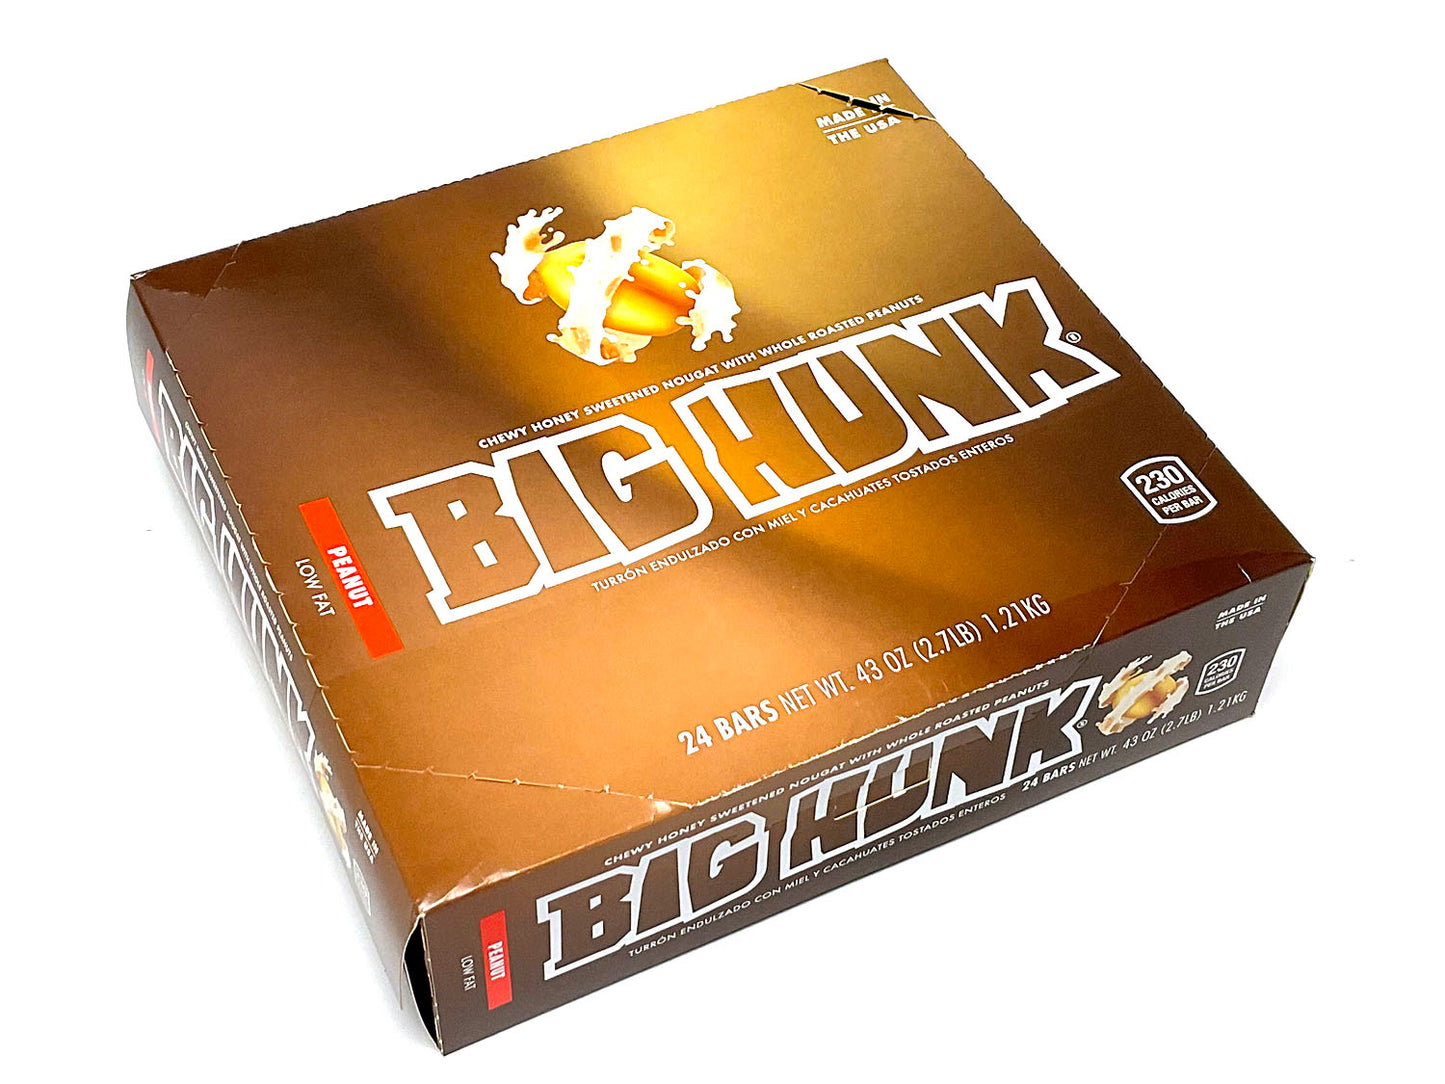 Big Hunk - 1.8 oz bar - box of 24